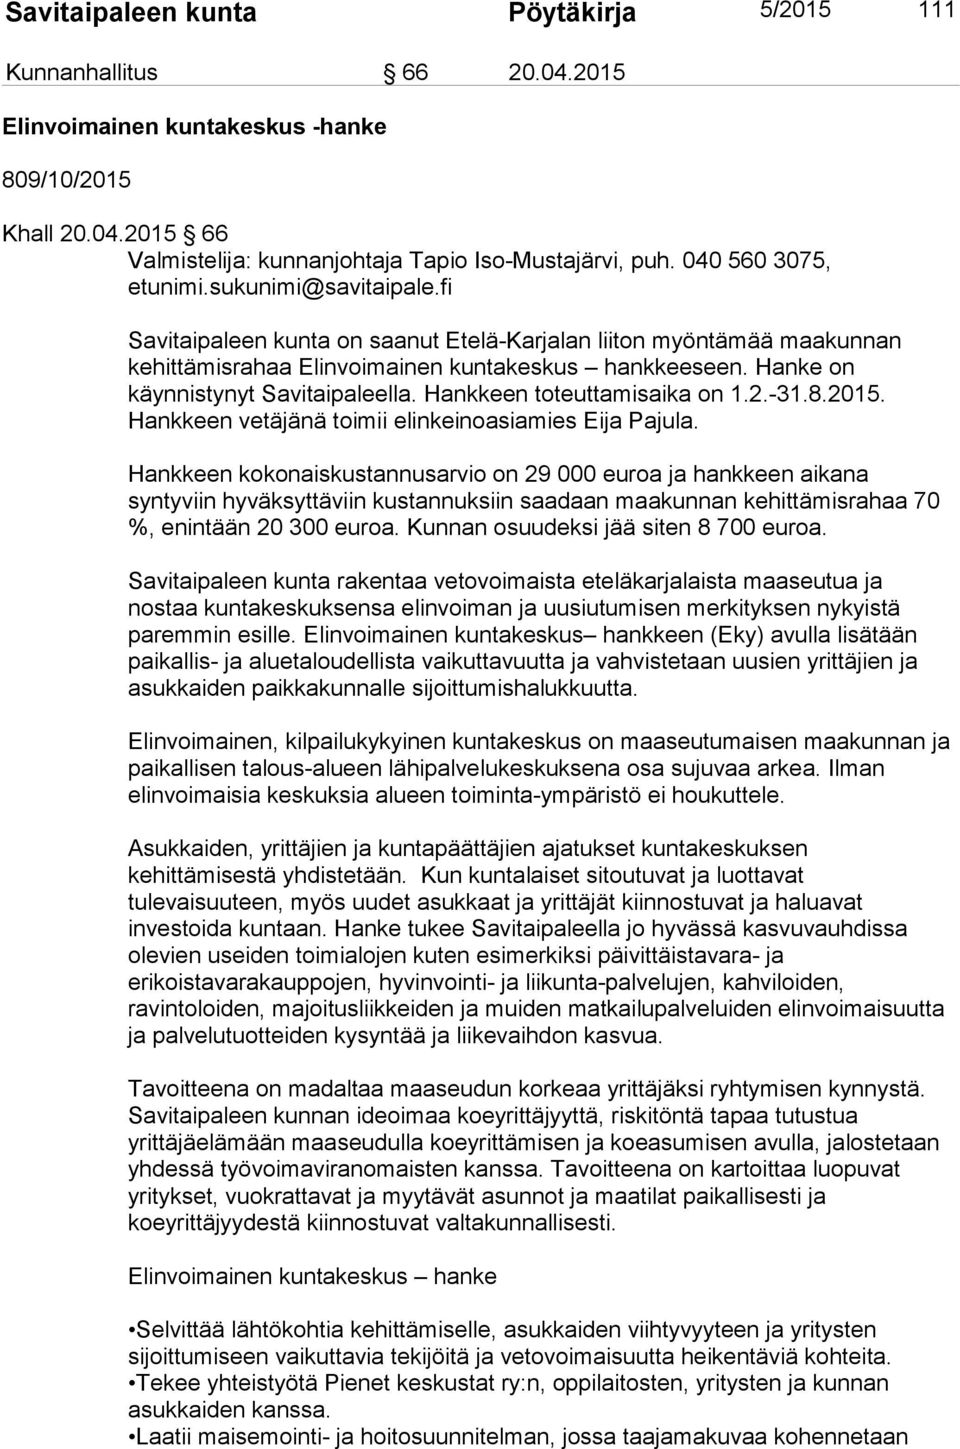 Hanke on käynnistynyt Savitaipaleella. Hankkeen toteuttamisaika on 1.2.-31.8.2015. Hankkeen vetäjänä toimii elinkeinoasiamies Eija Pajula.